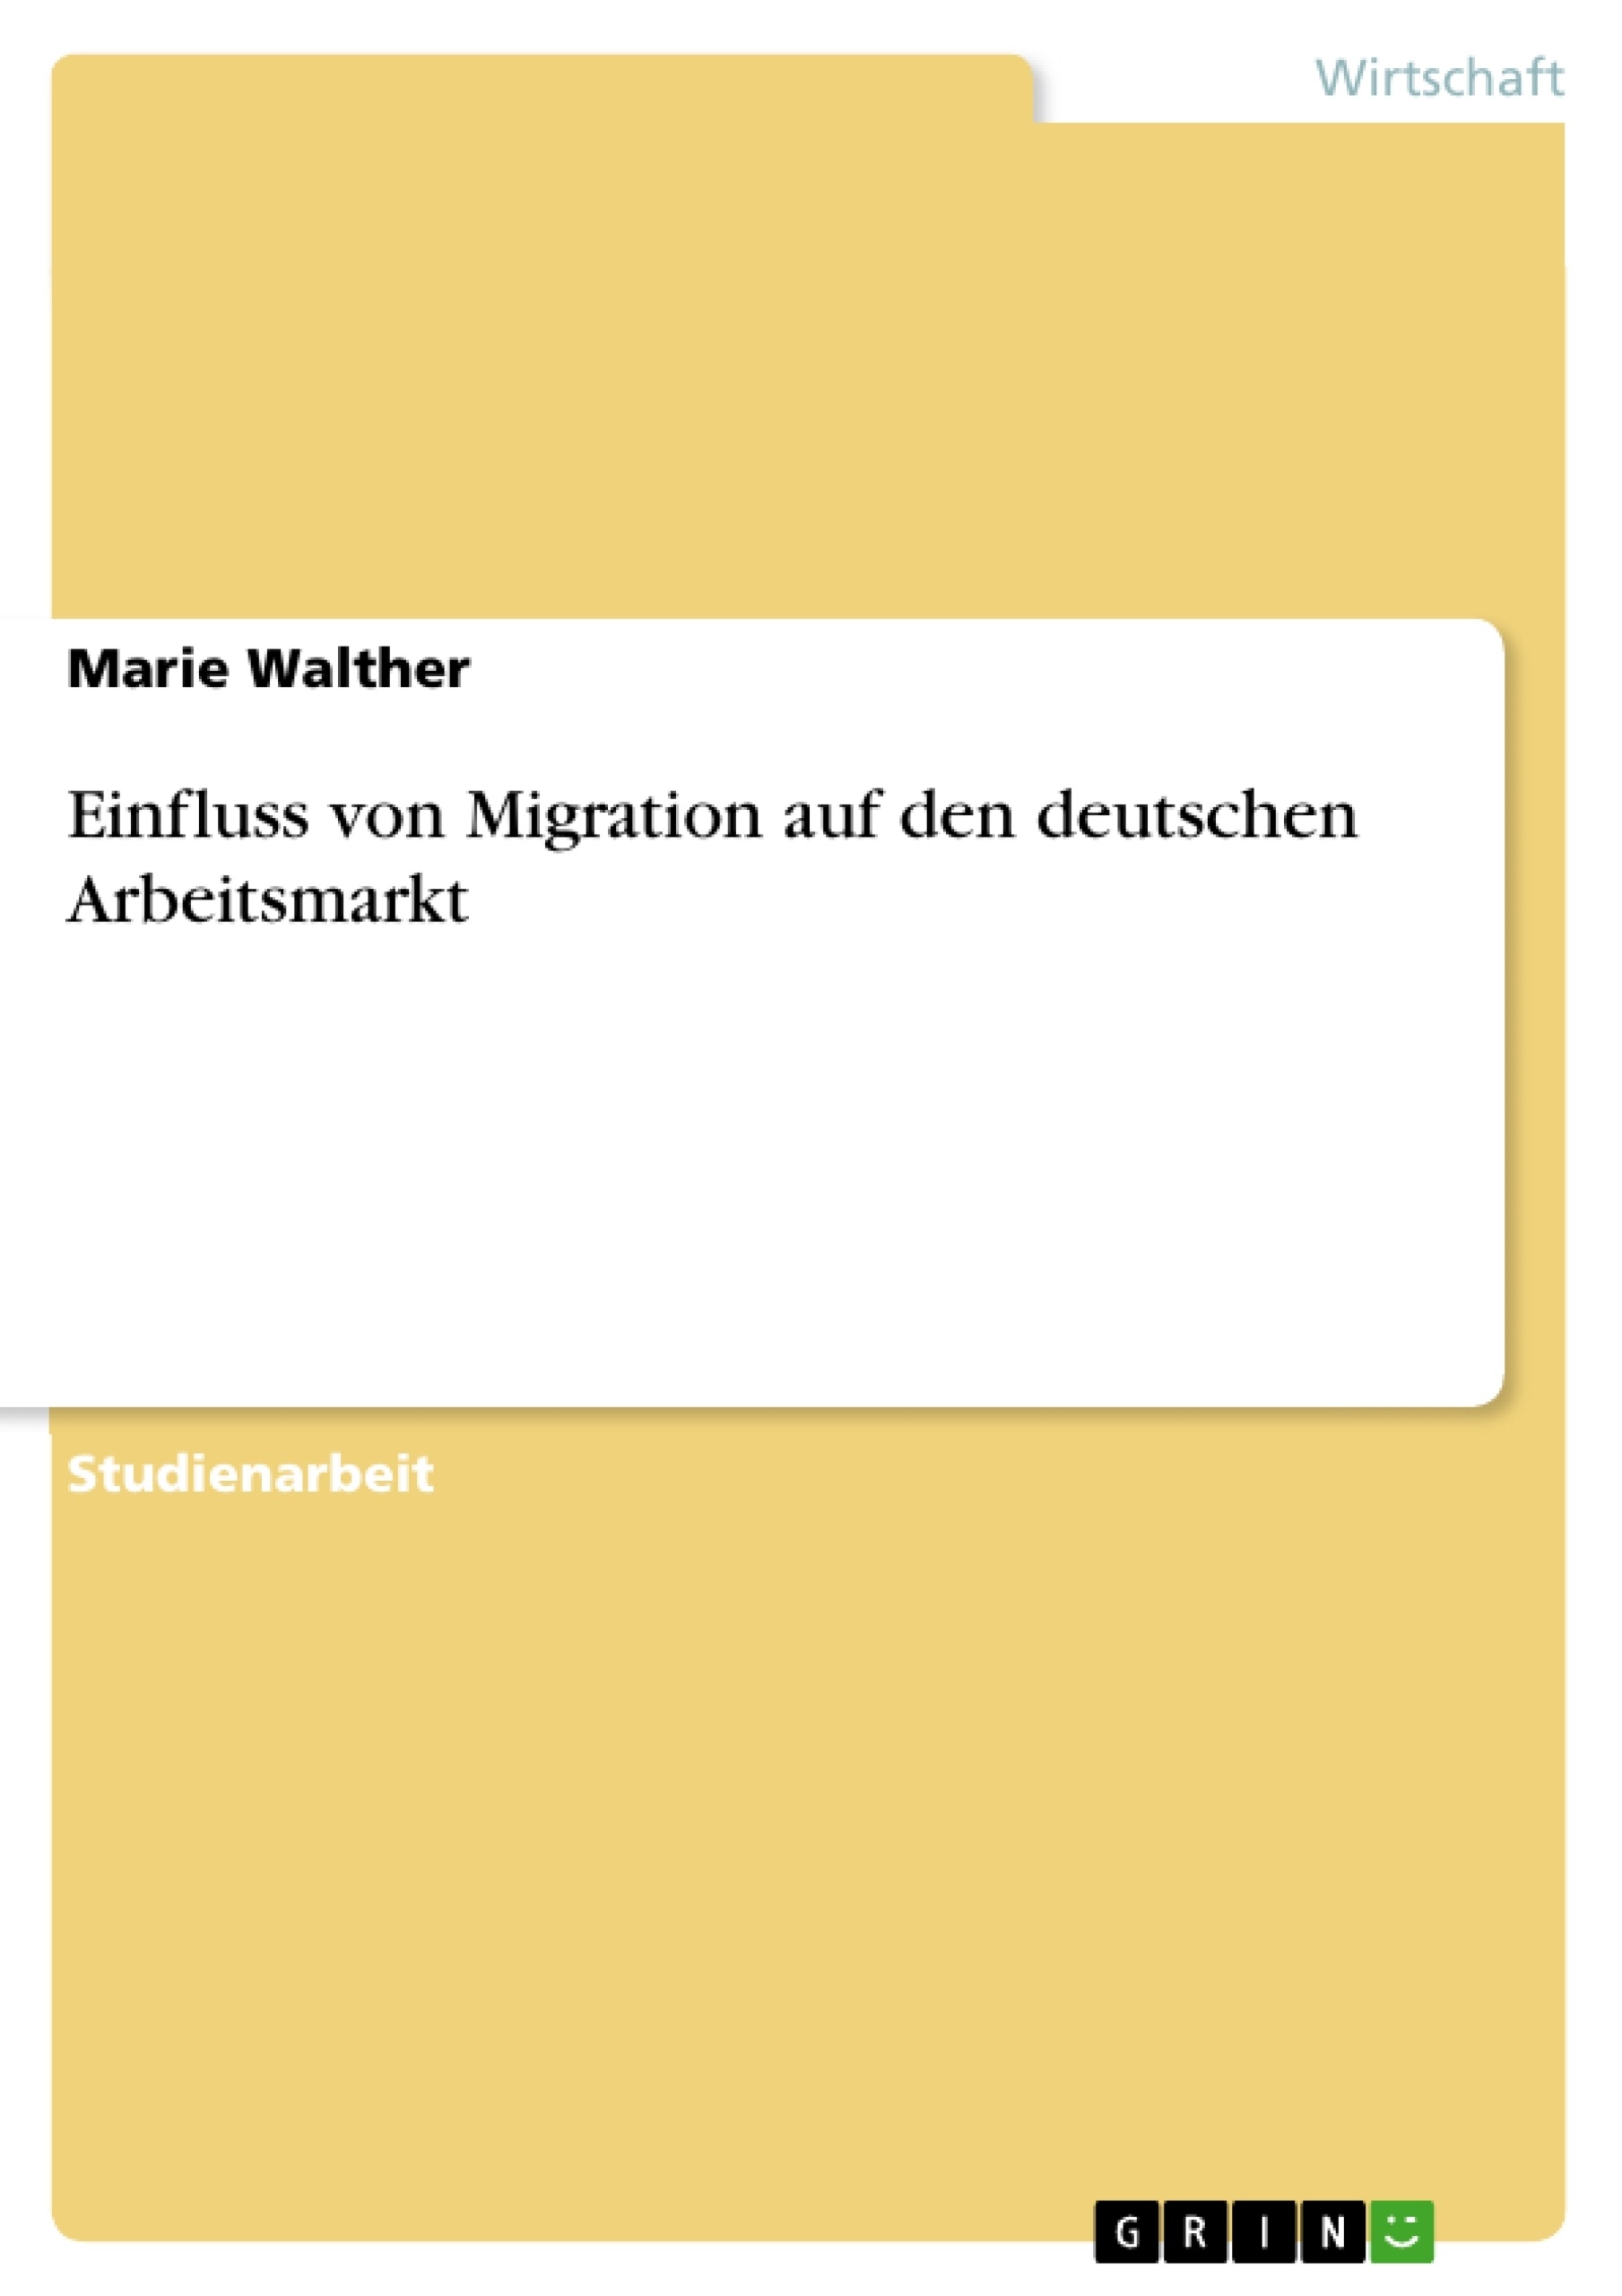 Title: Einfluss von Migration auf den deutschen Arbeitsmarkt